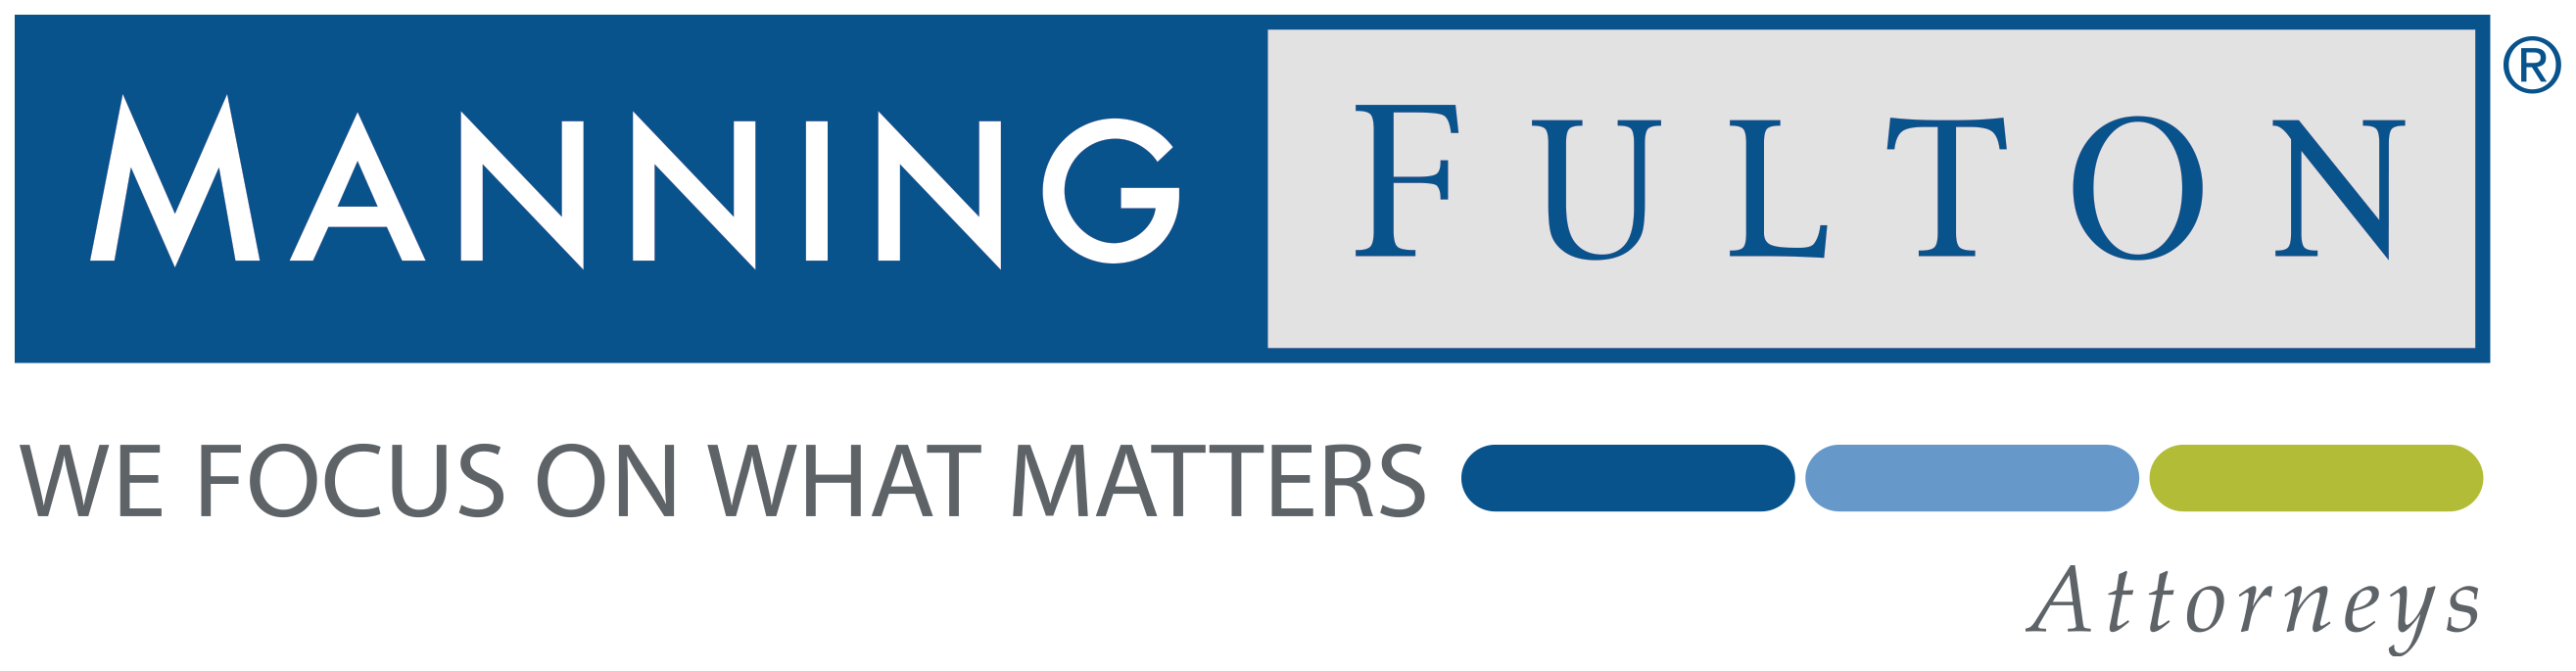 manning fulton logo